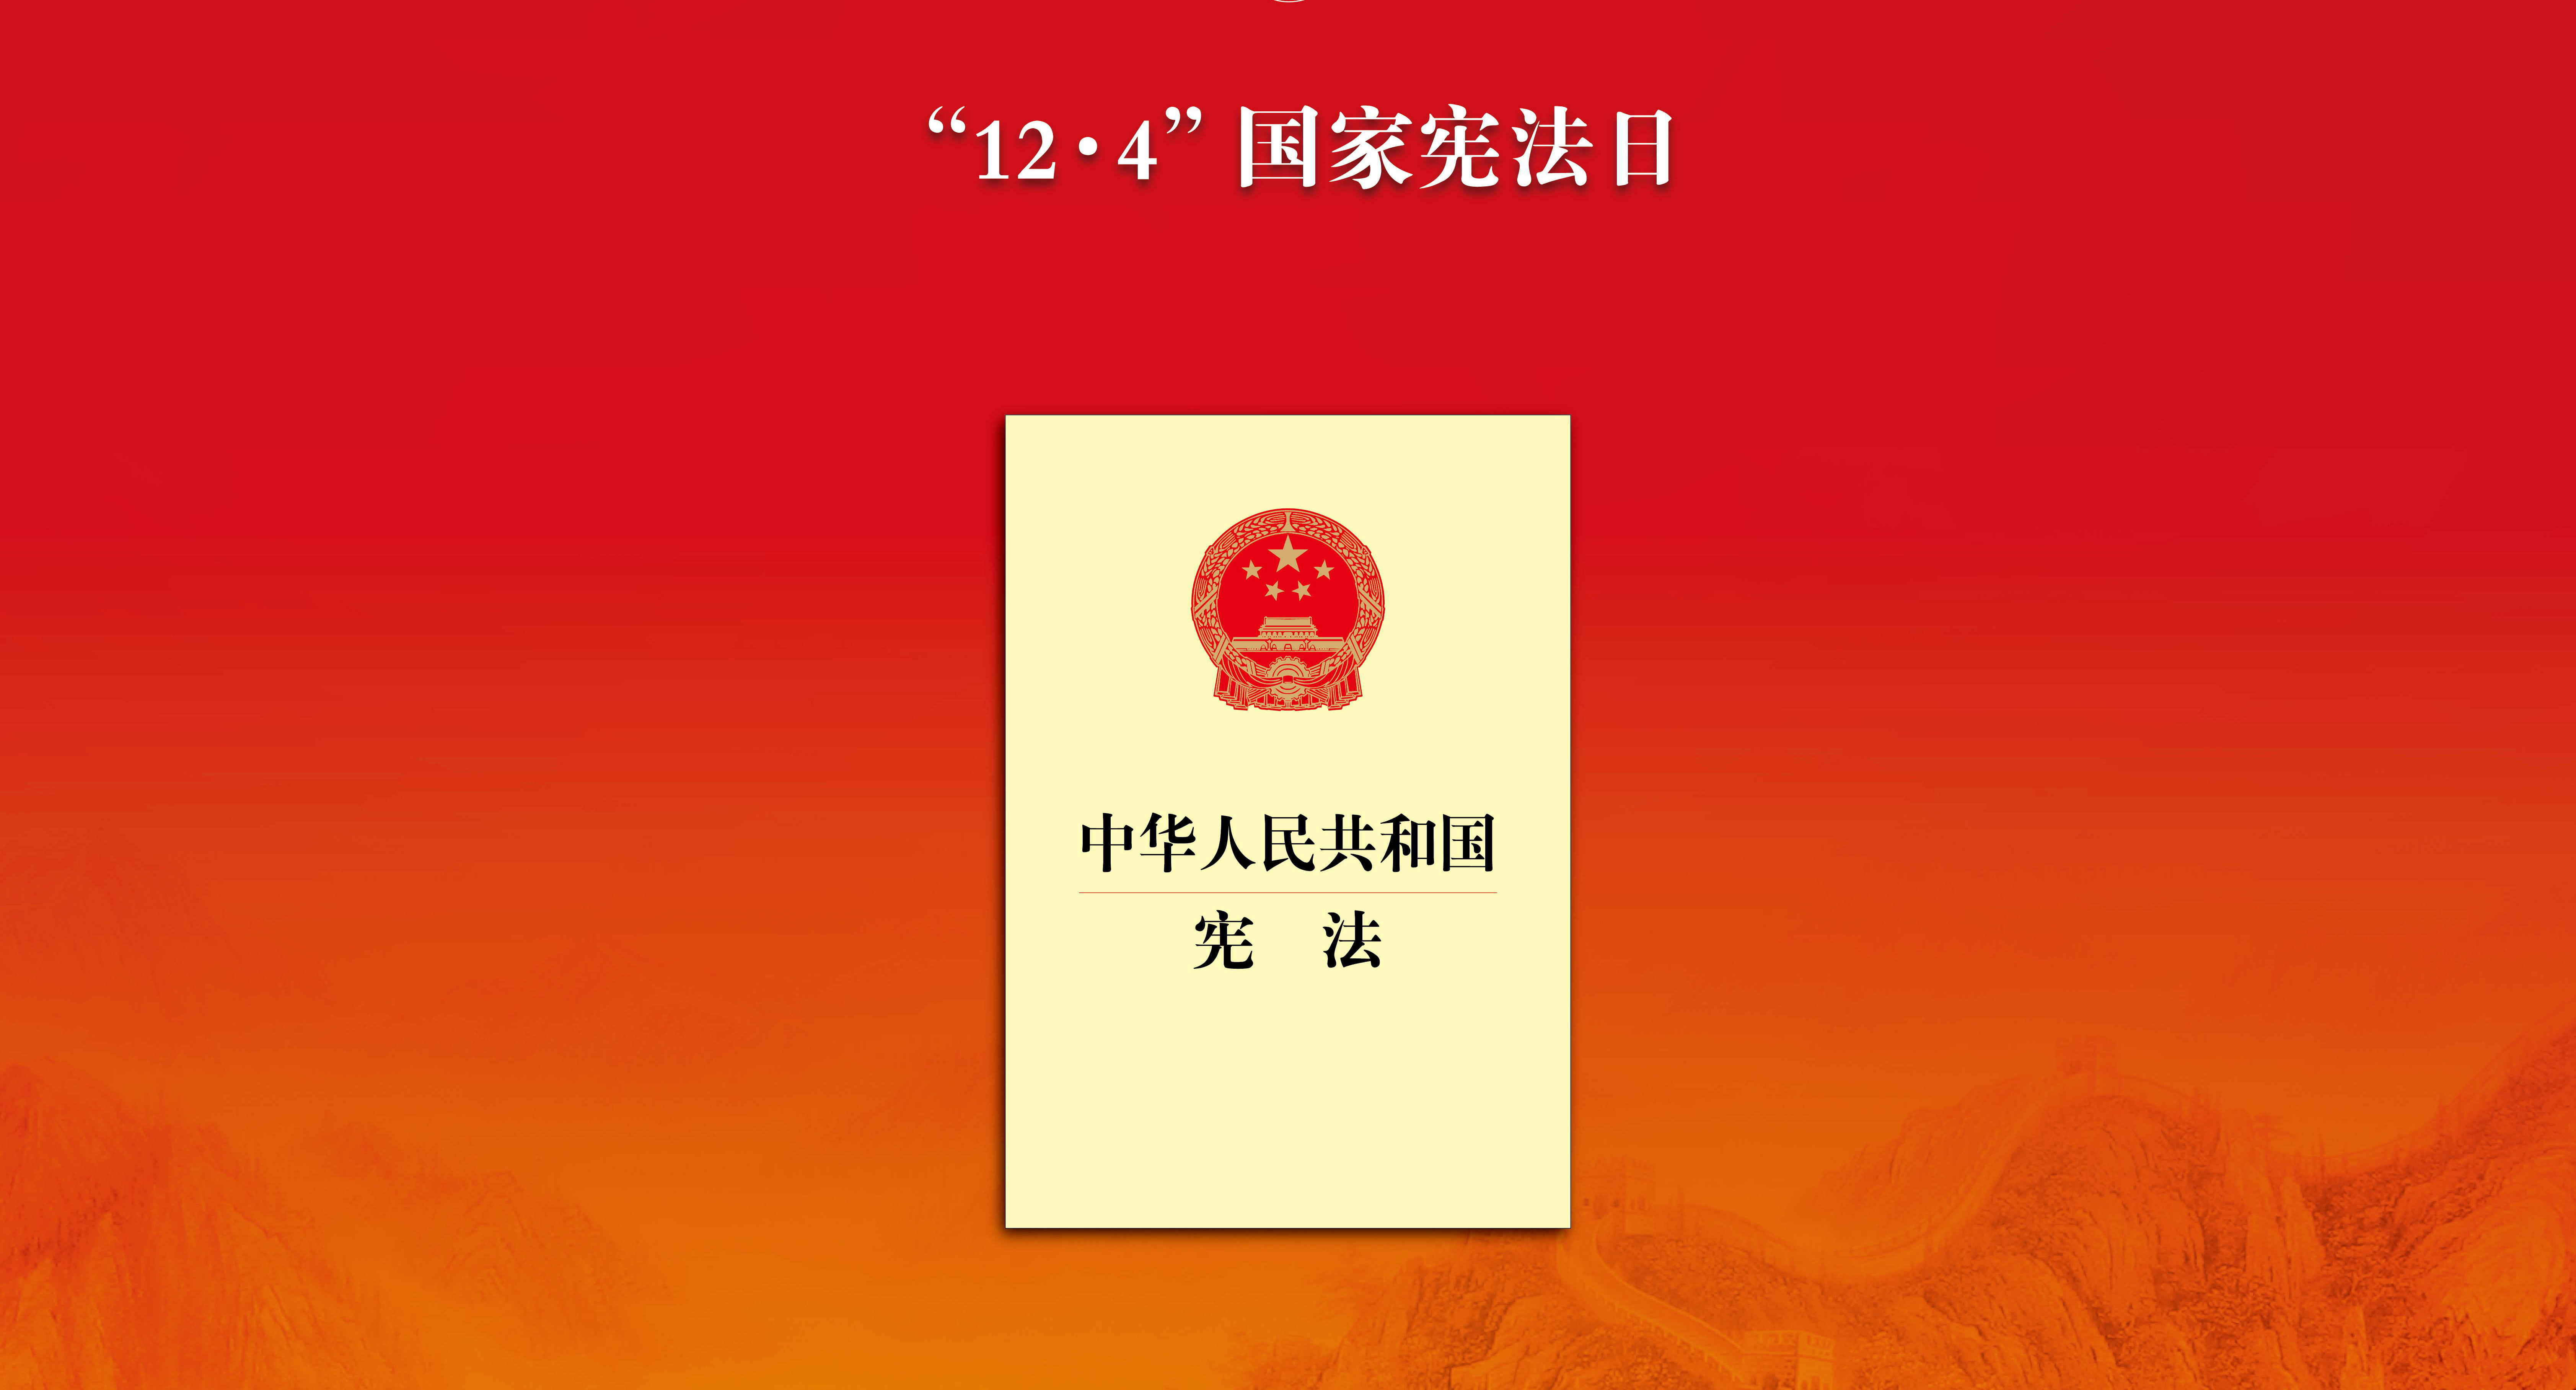 憲法宣傳周 | 教你一圖讀懂《中華人民共和國憲法》